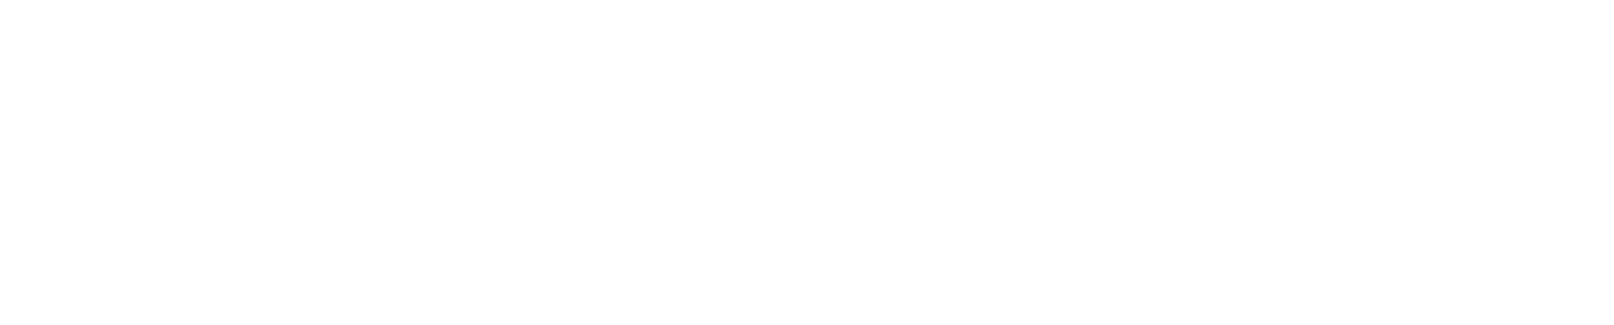 CATL logo for dark backgrounds (transparent PNG)